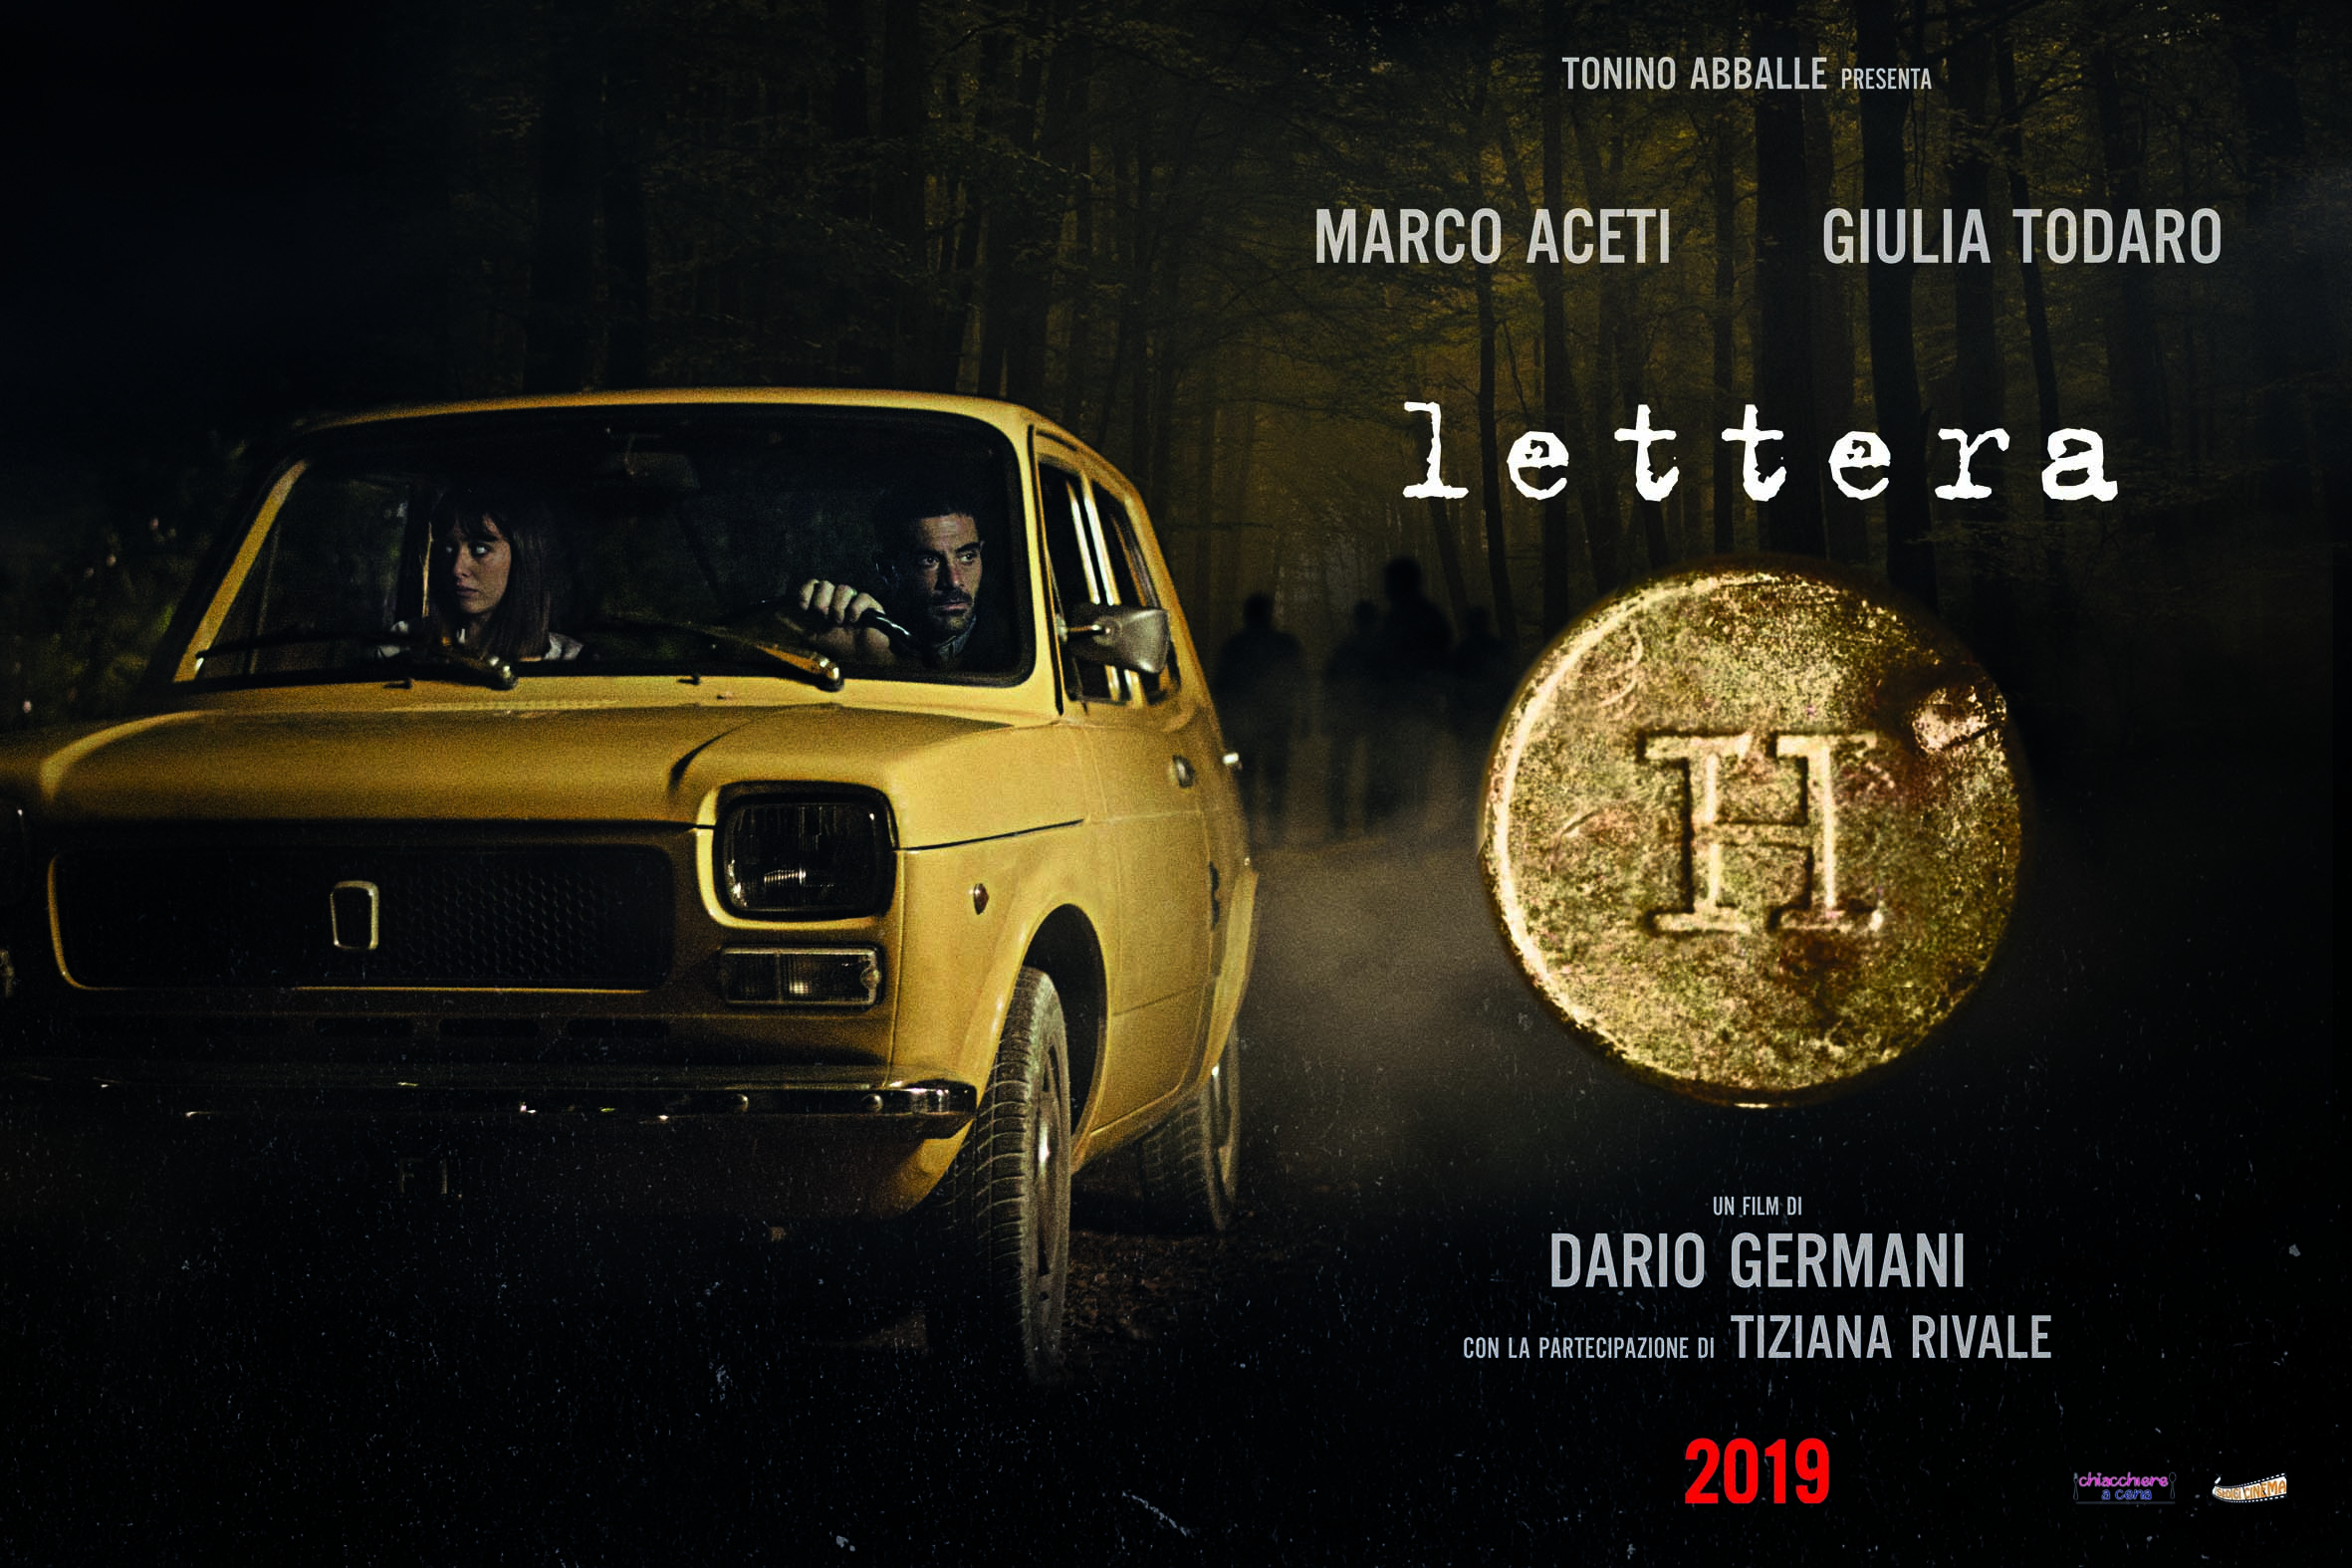 Tonino Abballe e Dario Germani , dopo il successo di Ninna Nanna tornano insieme sul set con il film “Lettera H”.